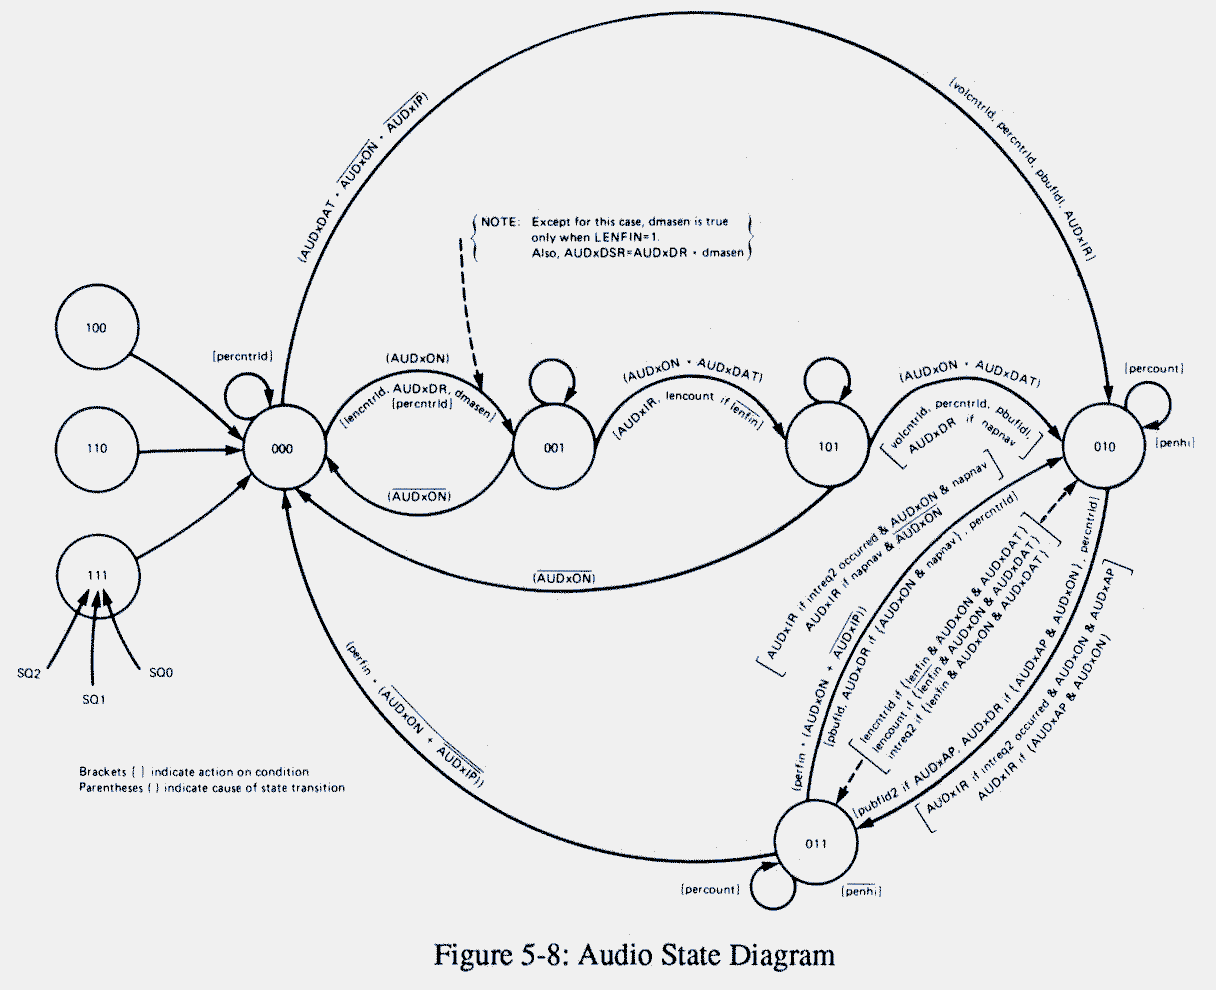  Figure 5-8: Audio State Diagram 